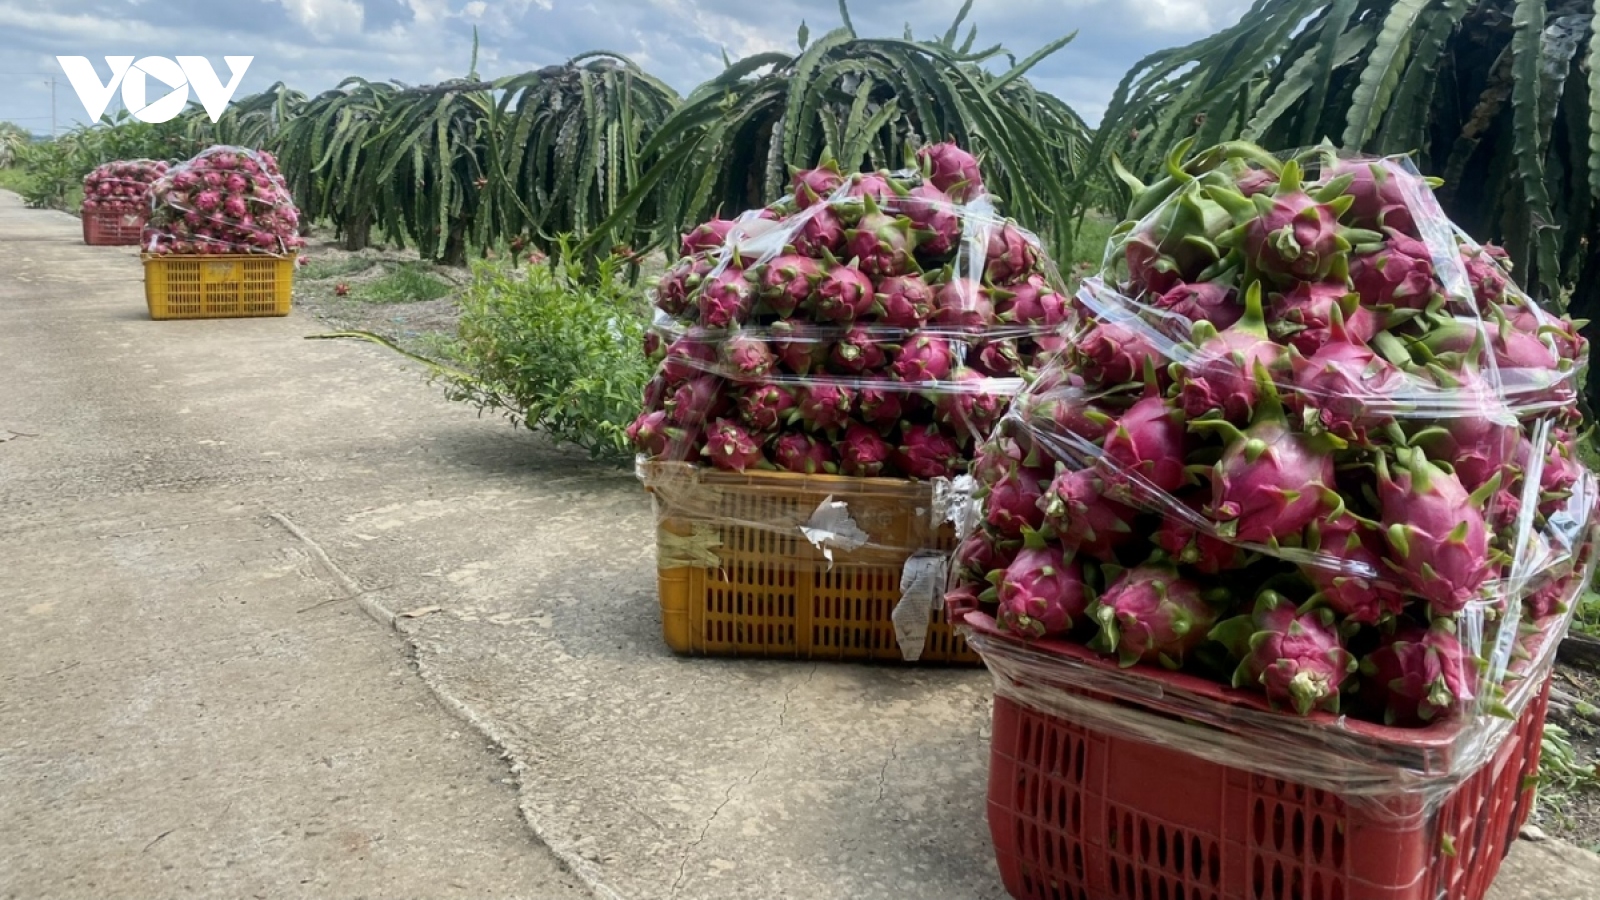 Bà Rịa-Vũng Tàu ổn định vùng trồng cây ăn trái để tránh bán đổ bán tháo